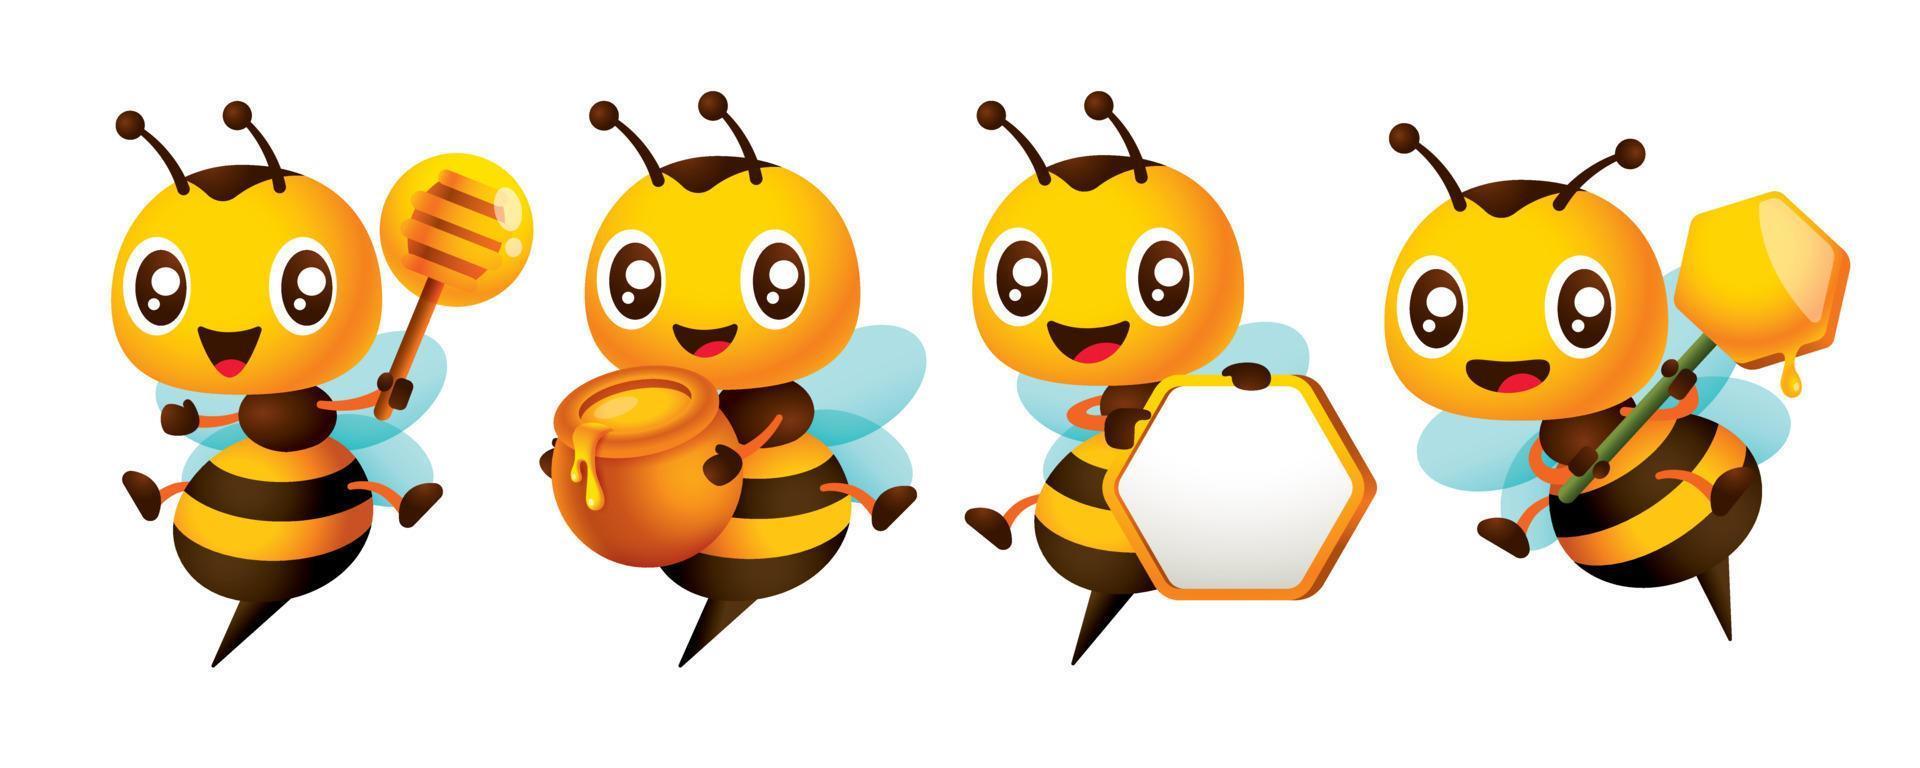 dibujos animados linda abeja personaje conjunto serie con diferente posa linda abeja participación miel cazo, panal letrero y miel maceta. vector mascota conjunto colección